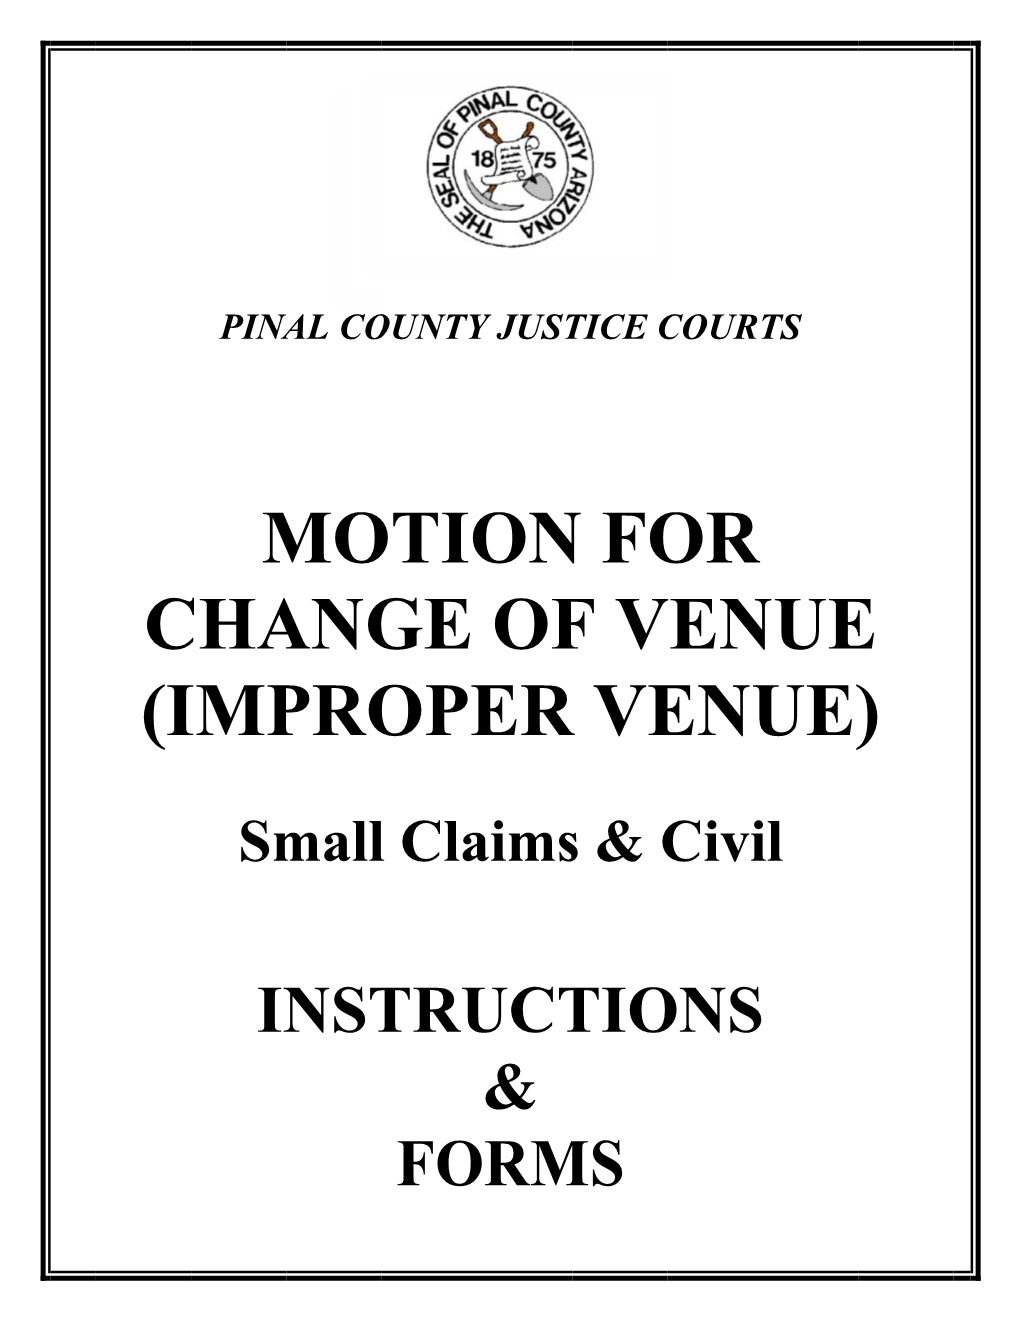 Motion for Change of Venue (Improper Venue)